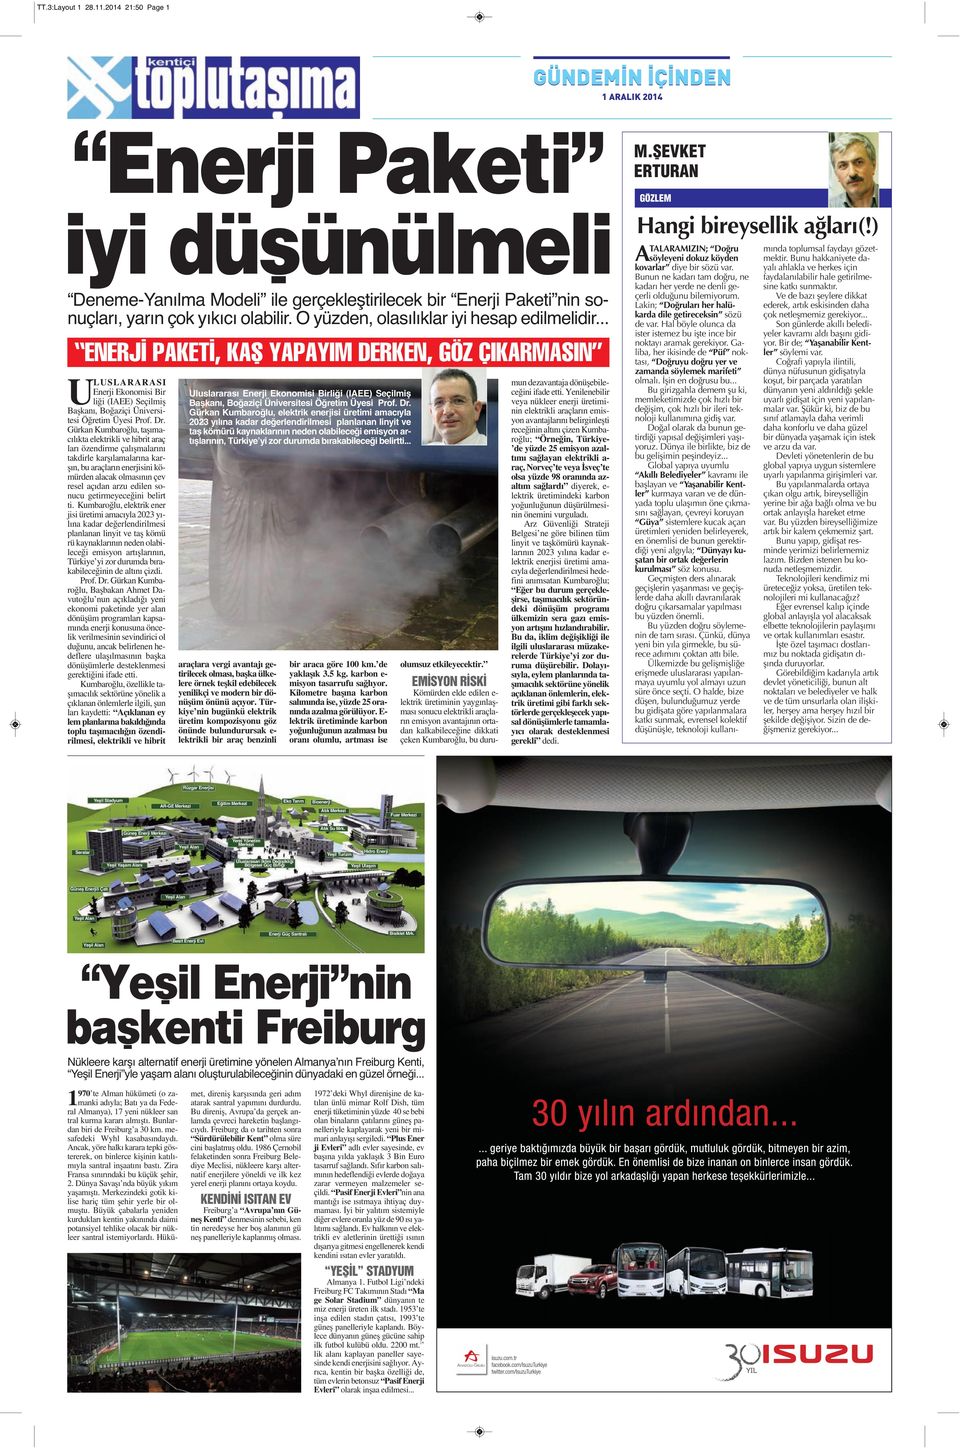 Dr. Gürkan Kumbaroğlu, taşımacılıkta elektrikli ve hibrit araç ları özendirme çalışmalarını takdirle karşılamalarına karşın, bu araçların enerjisini kömürden alacak olmasının çev resel açıdan arzu